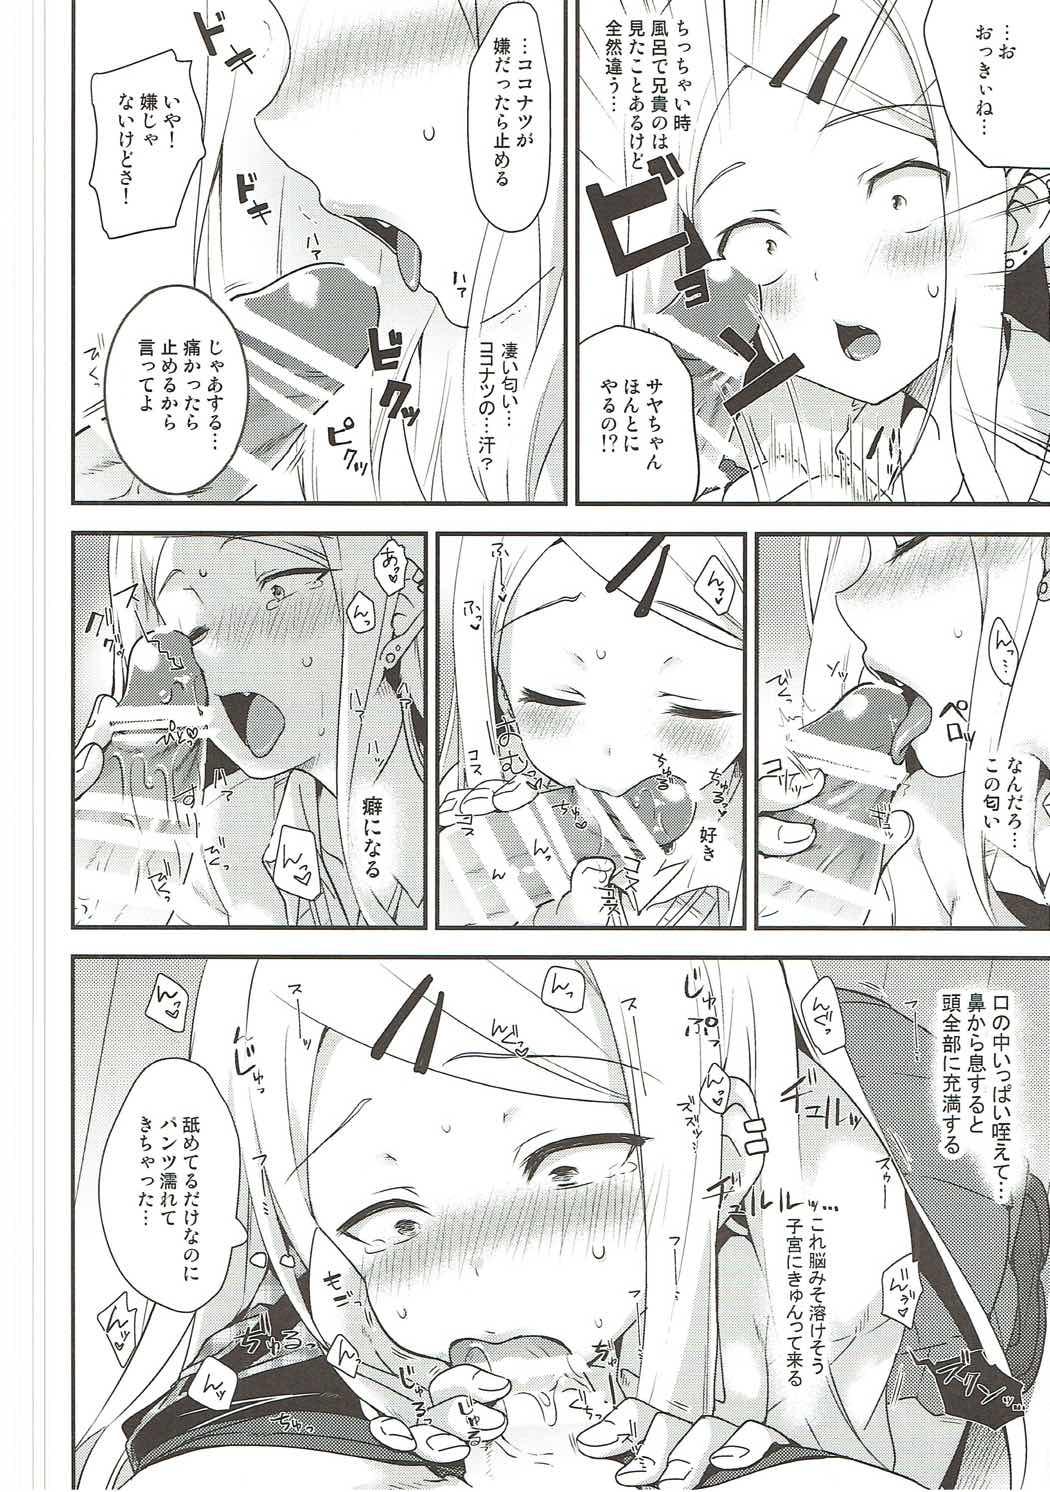 Perfect Gyuunyuu Girai Dagashi Kashi Suki na Hito no wa Nomechau no - Dagashi kashi Girl Girl - Page 11